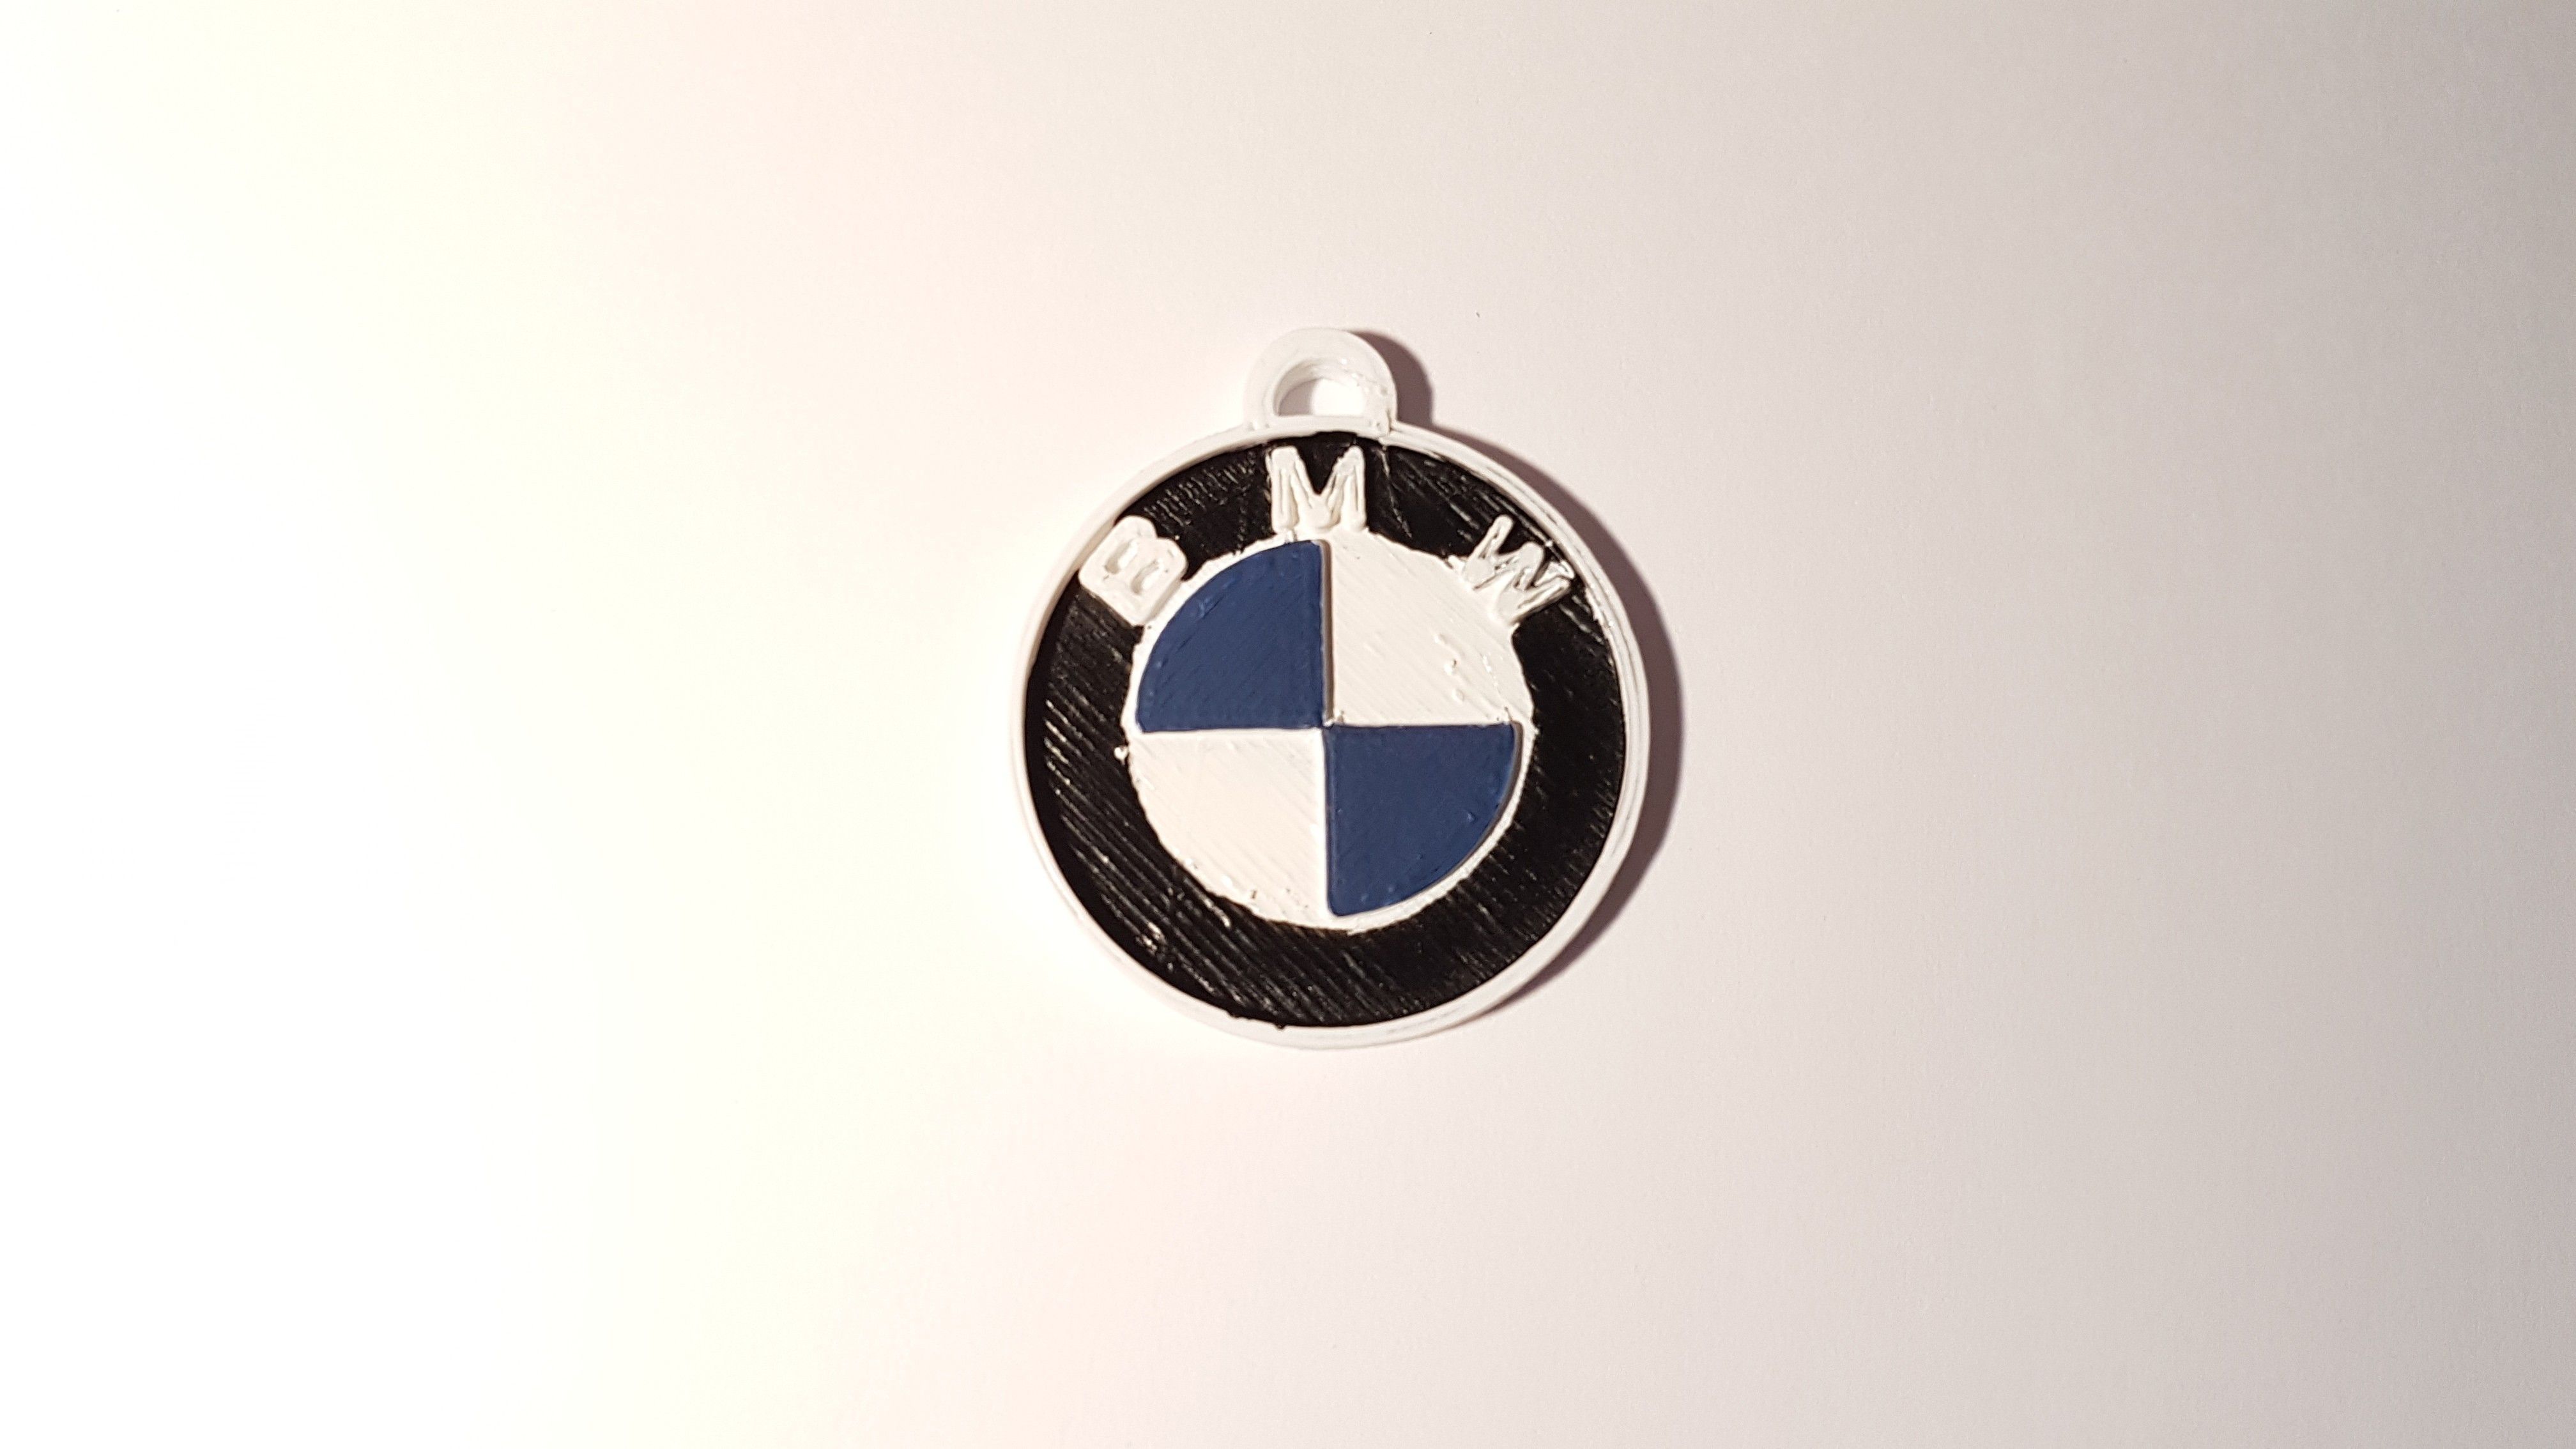 20190405_213950.jpg STL-Datei BMW key ring kostenlos・Modell zum 3D-Drucken zum herunterladen, f1l2o30